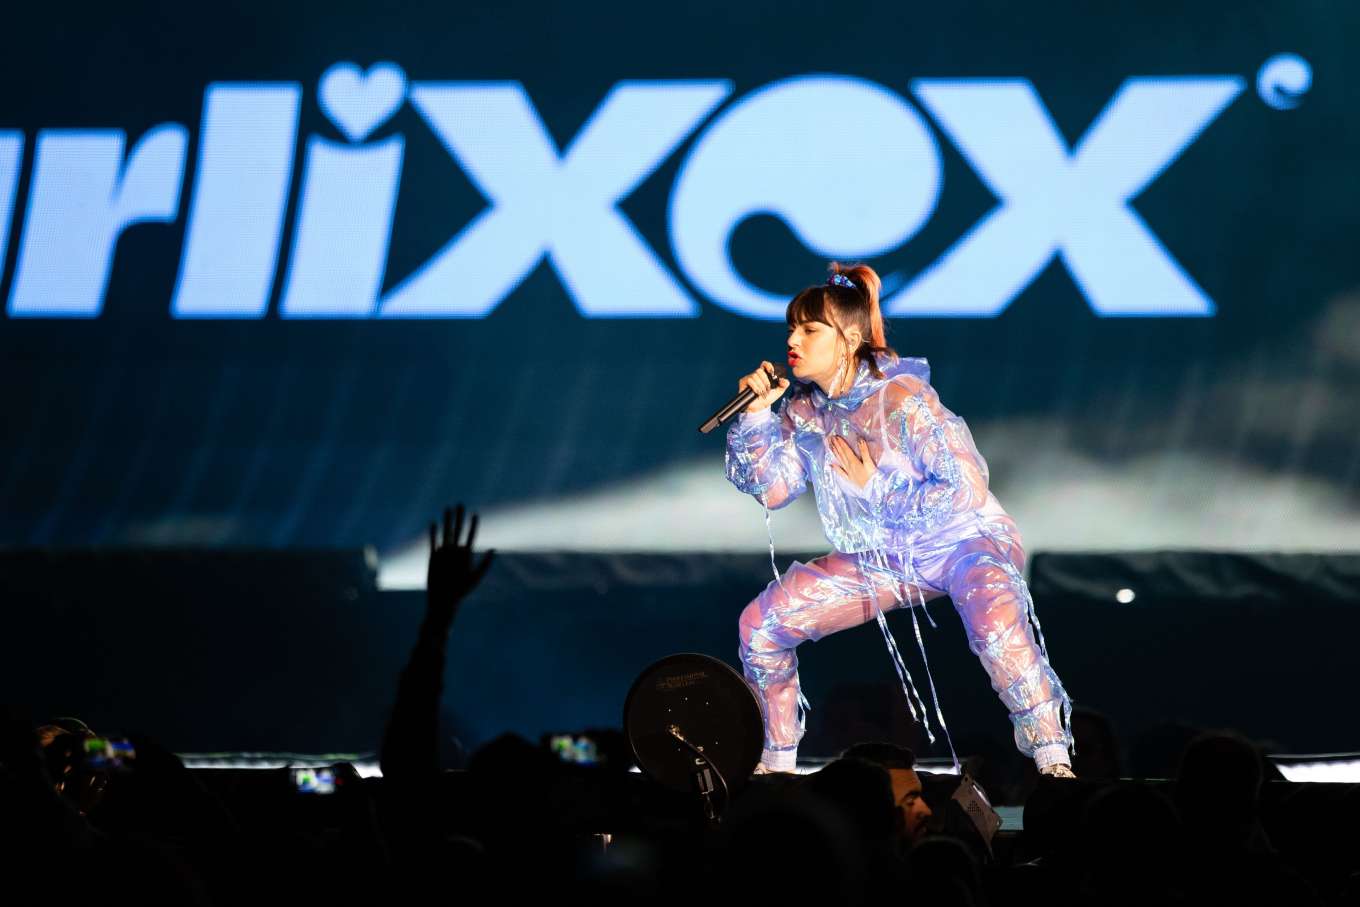 Charli XCX â€“ Performs at Optus Stadium in Perth â€“ Australia